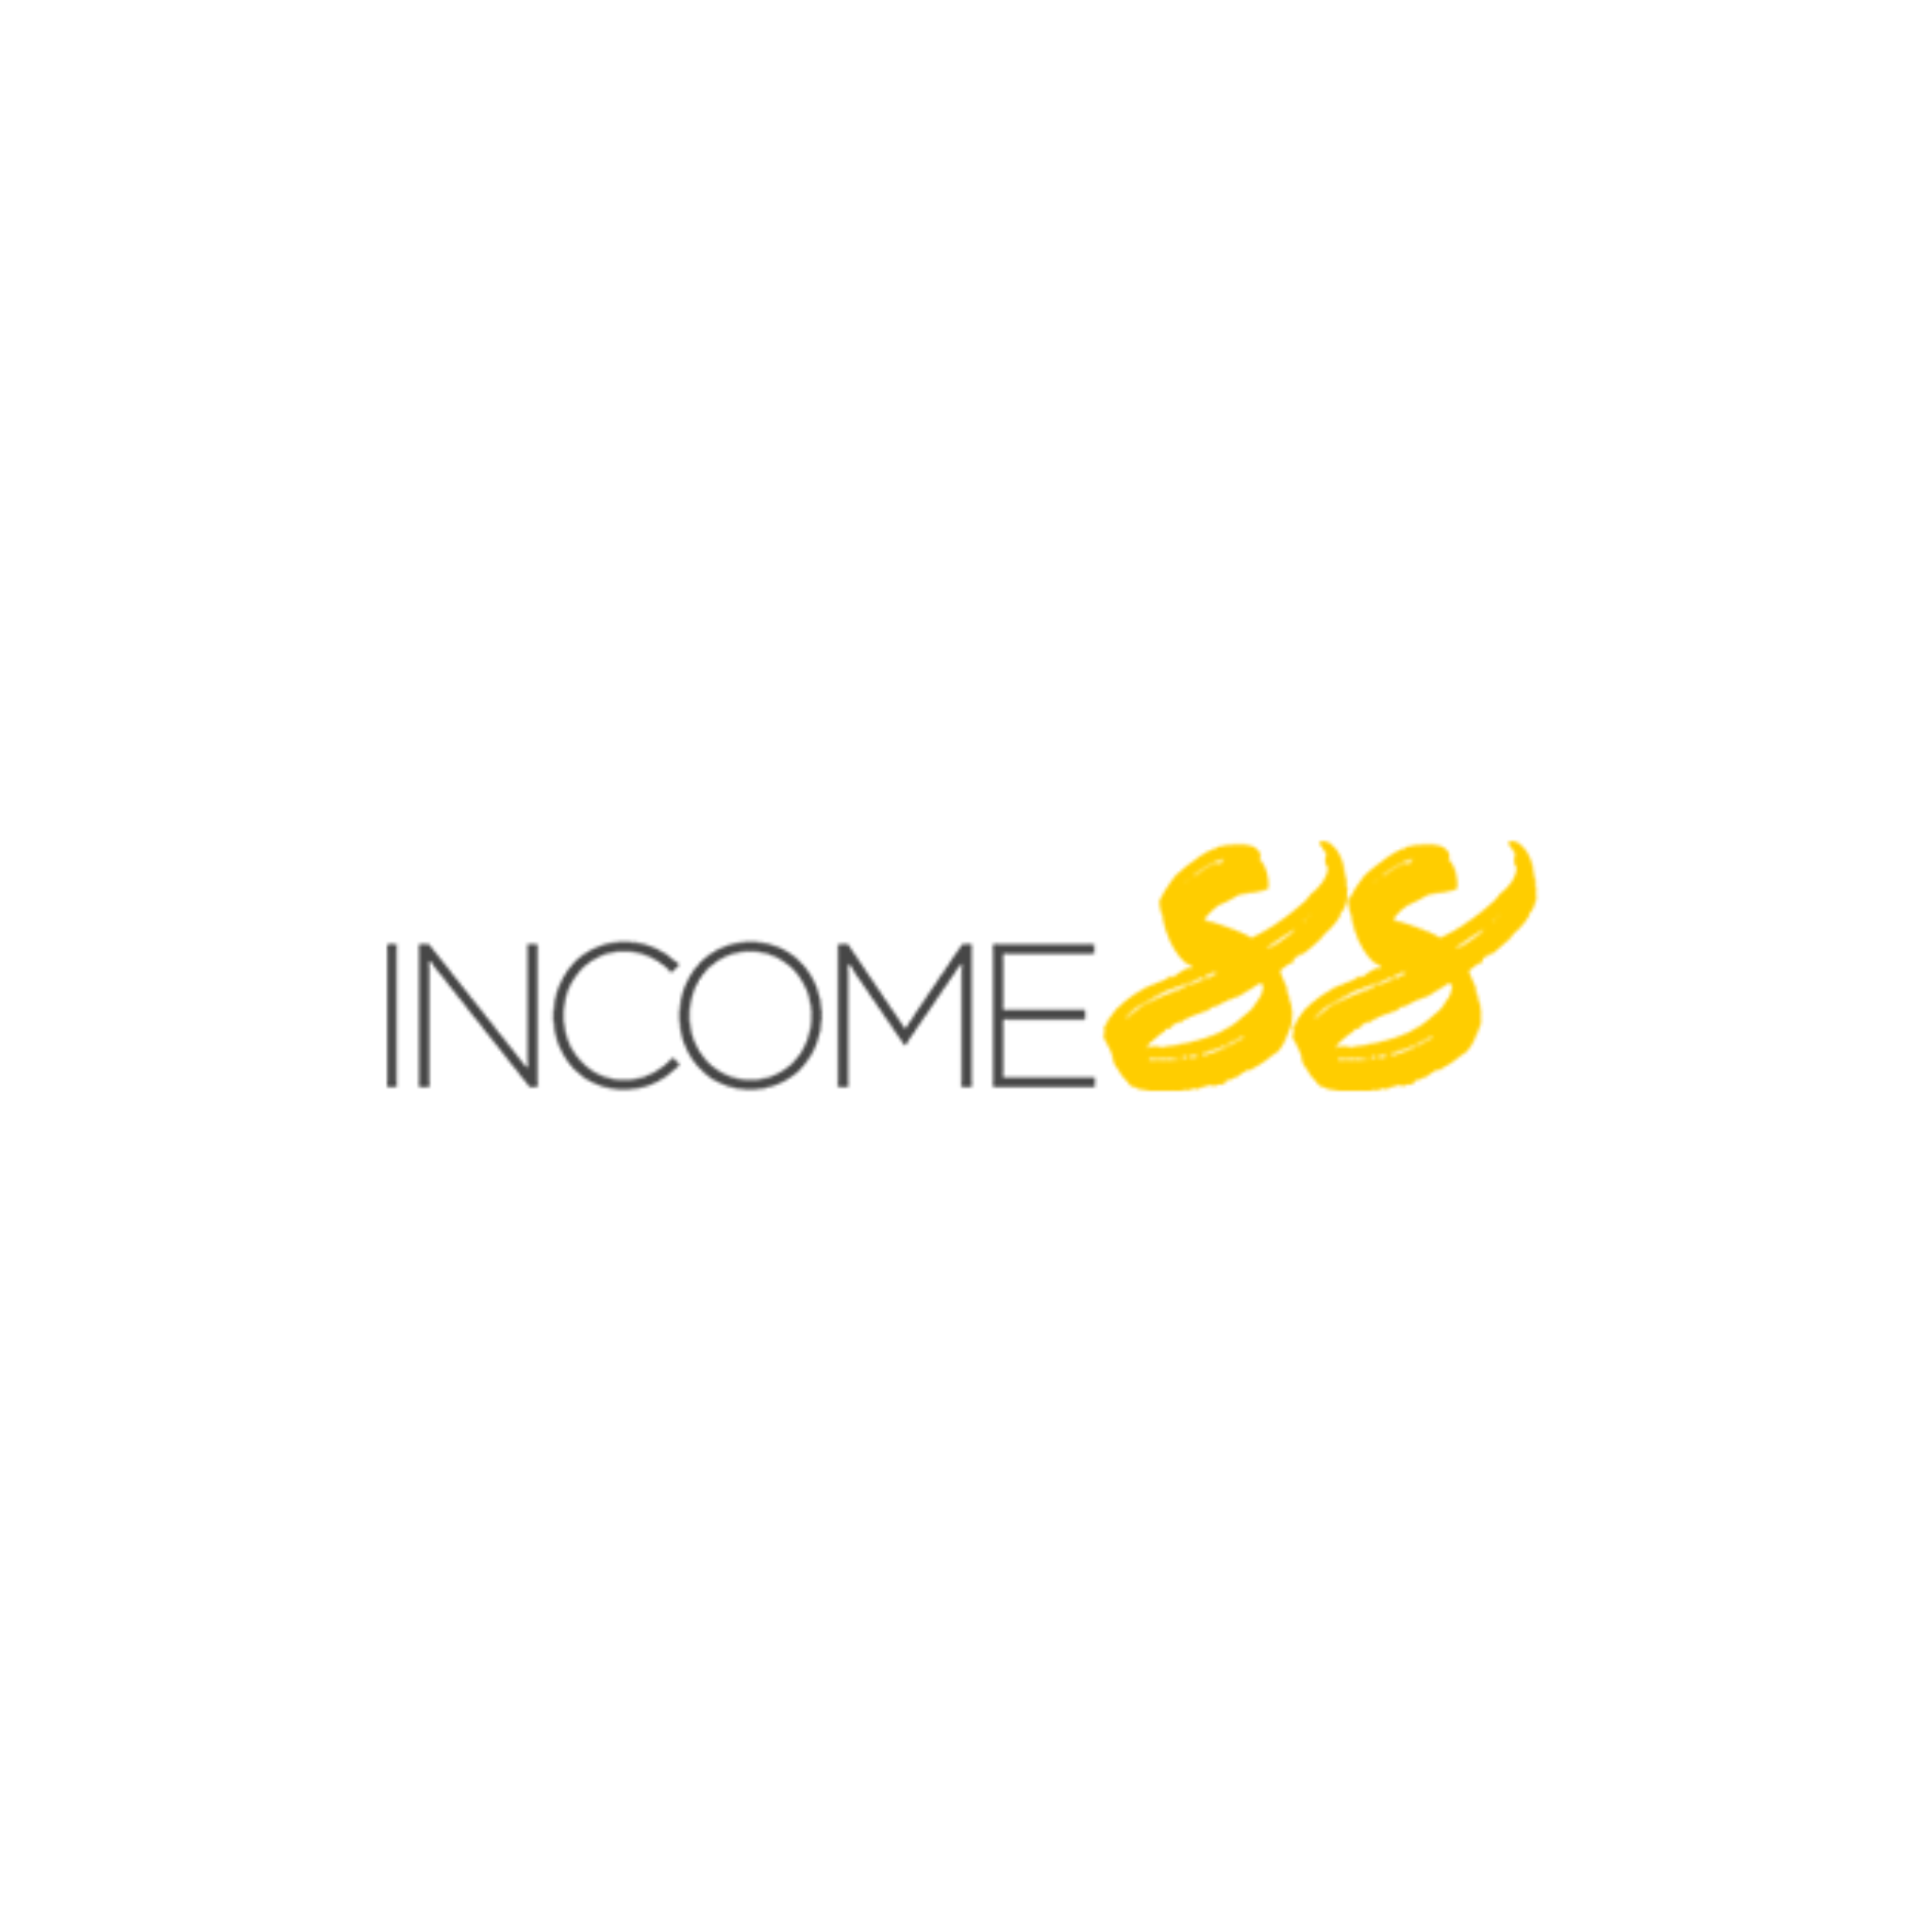 Income 88